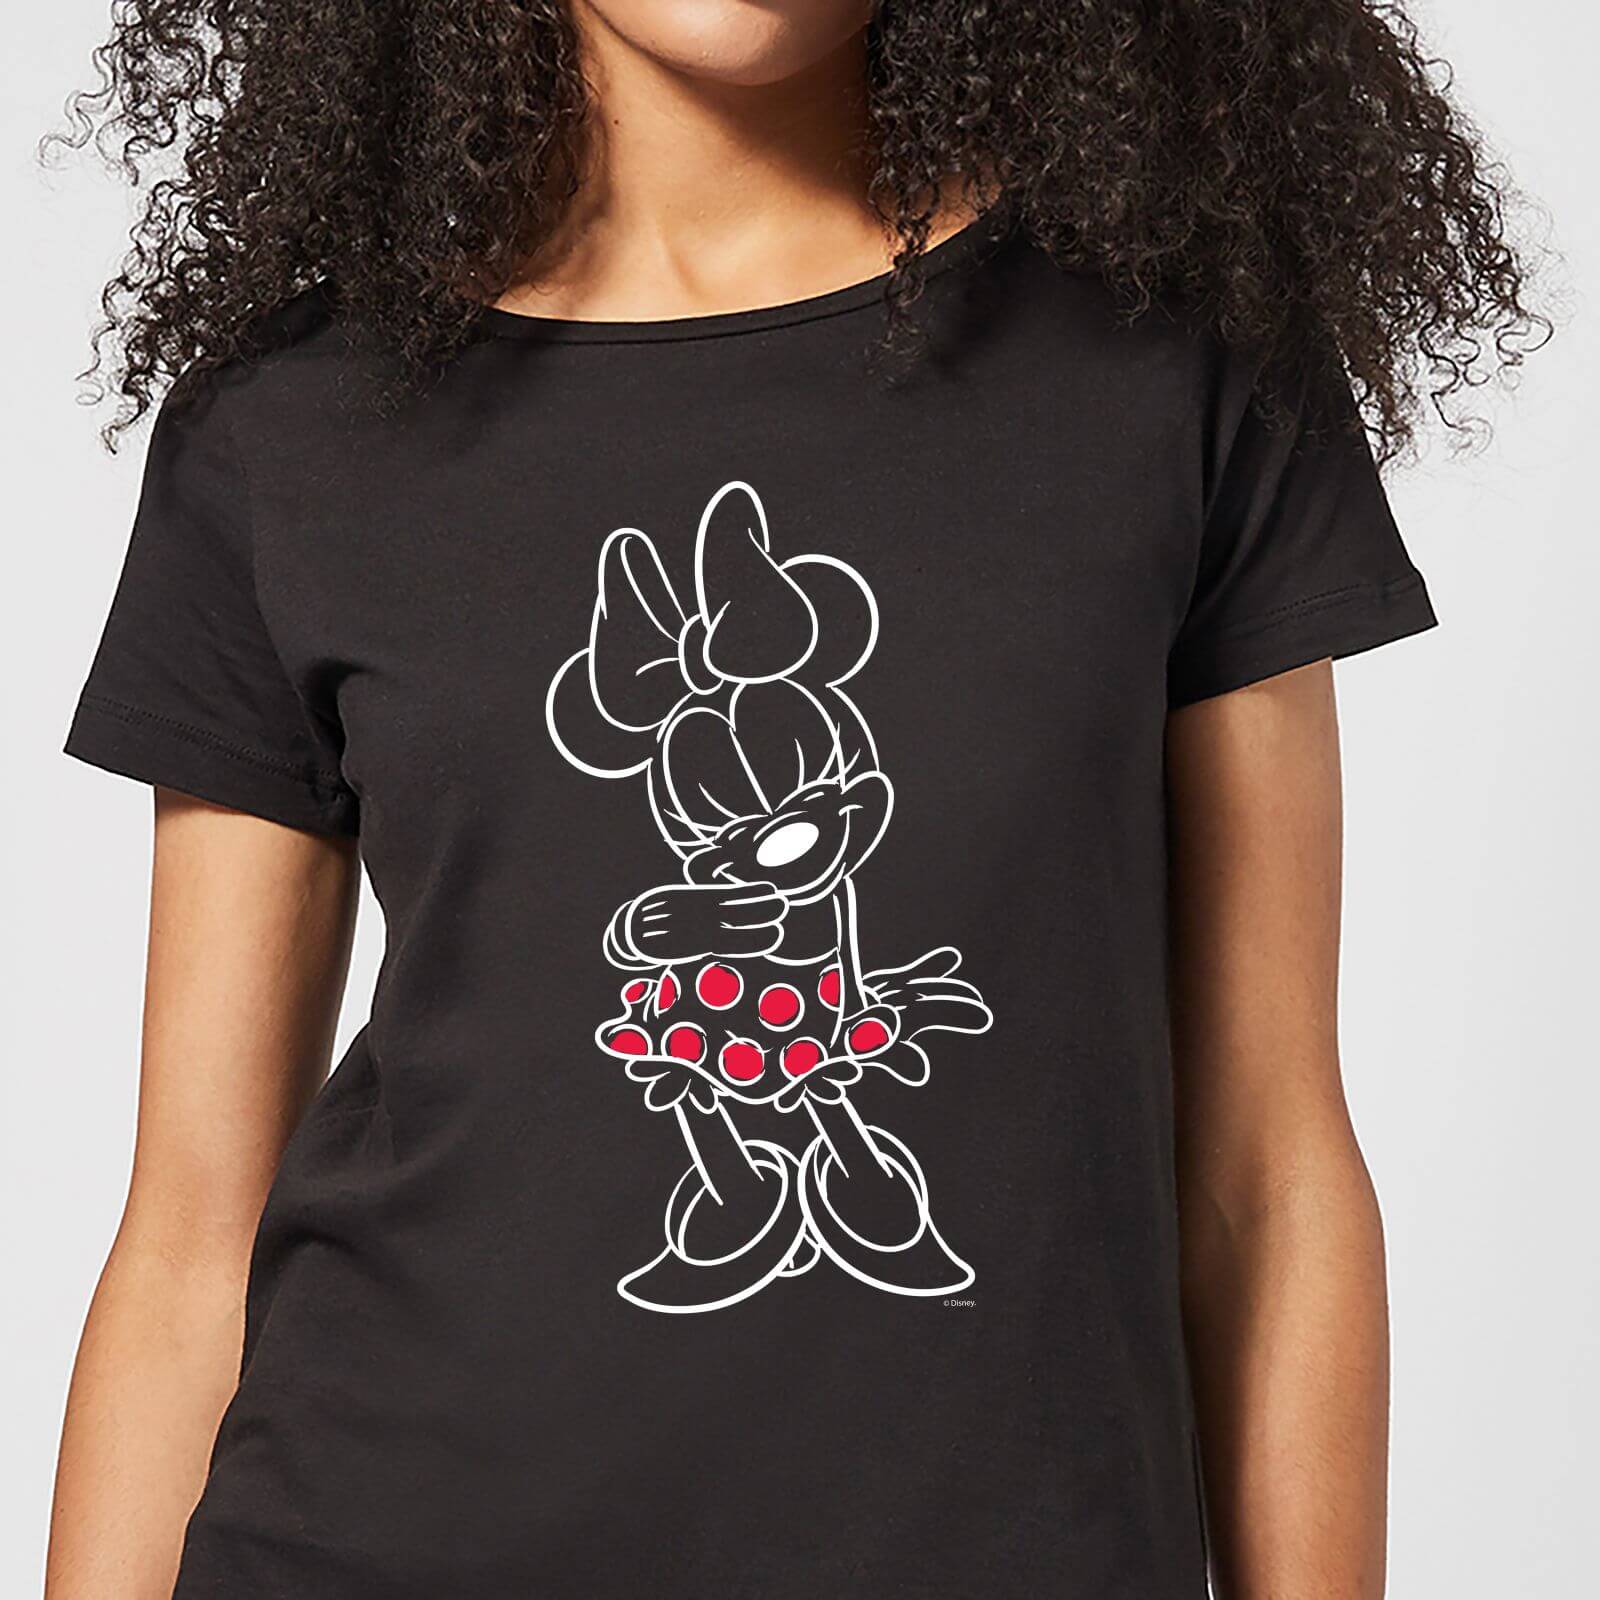 Disney Mini Mouse Line Art Women's T-Shirt - Black - XL - Black